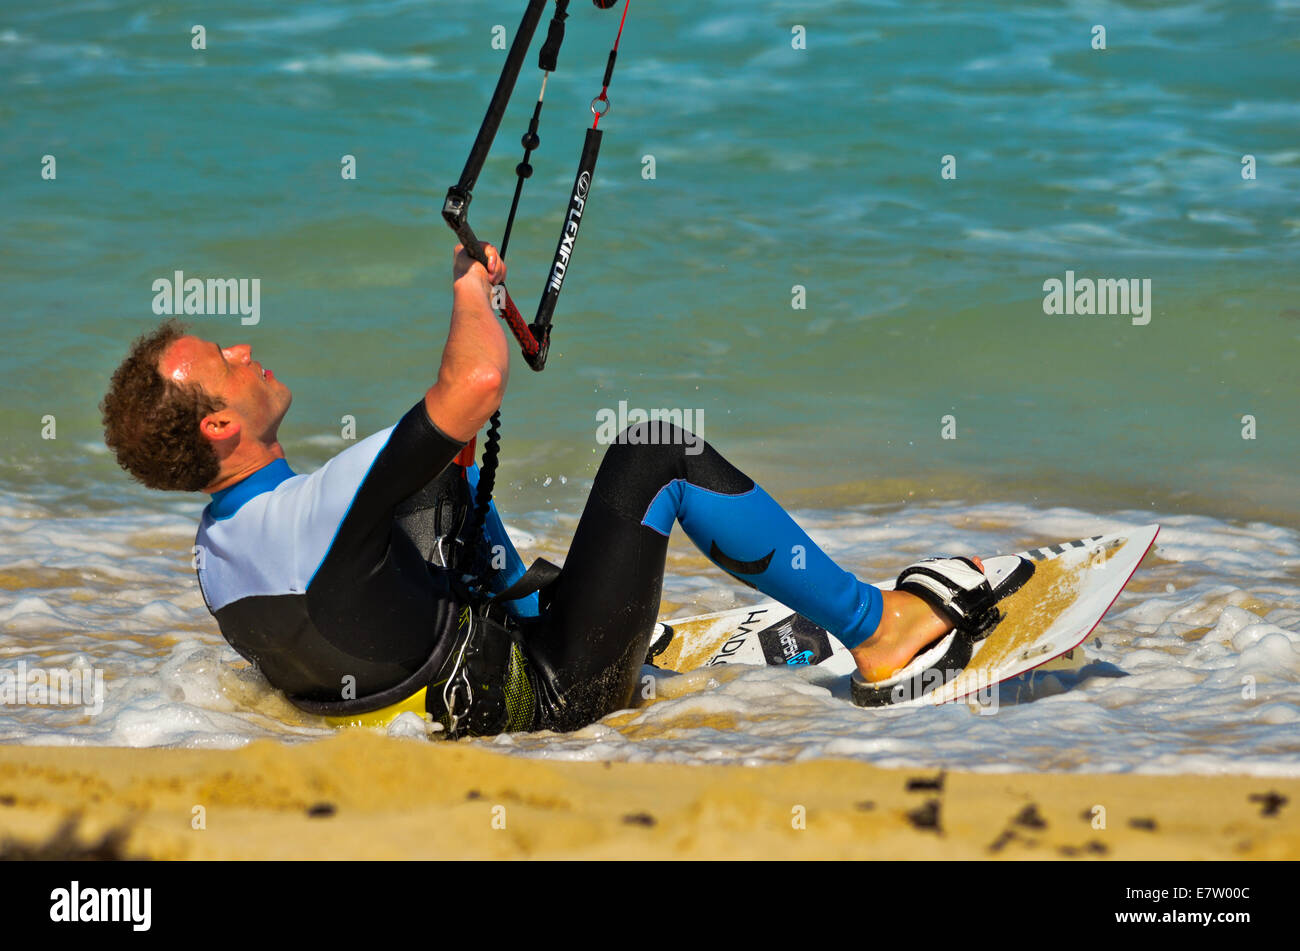 Il kite surf sulla spiaggia cercando di catturare il vento, Foto Stock